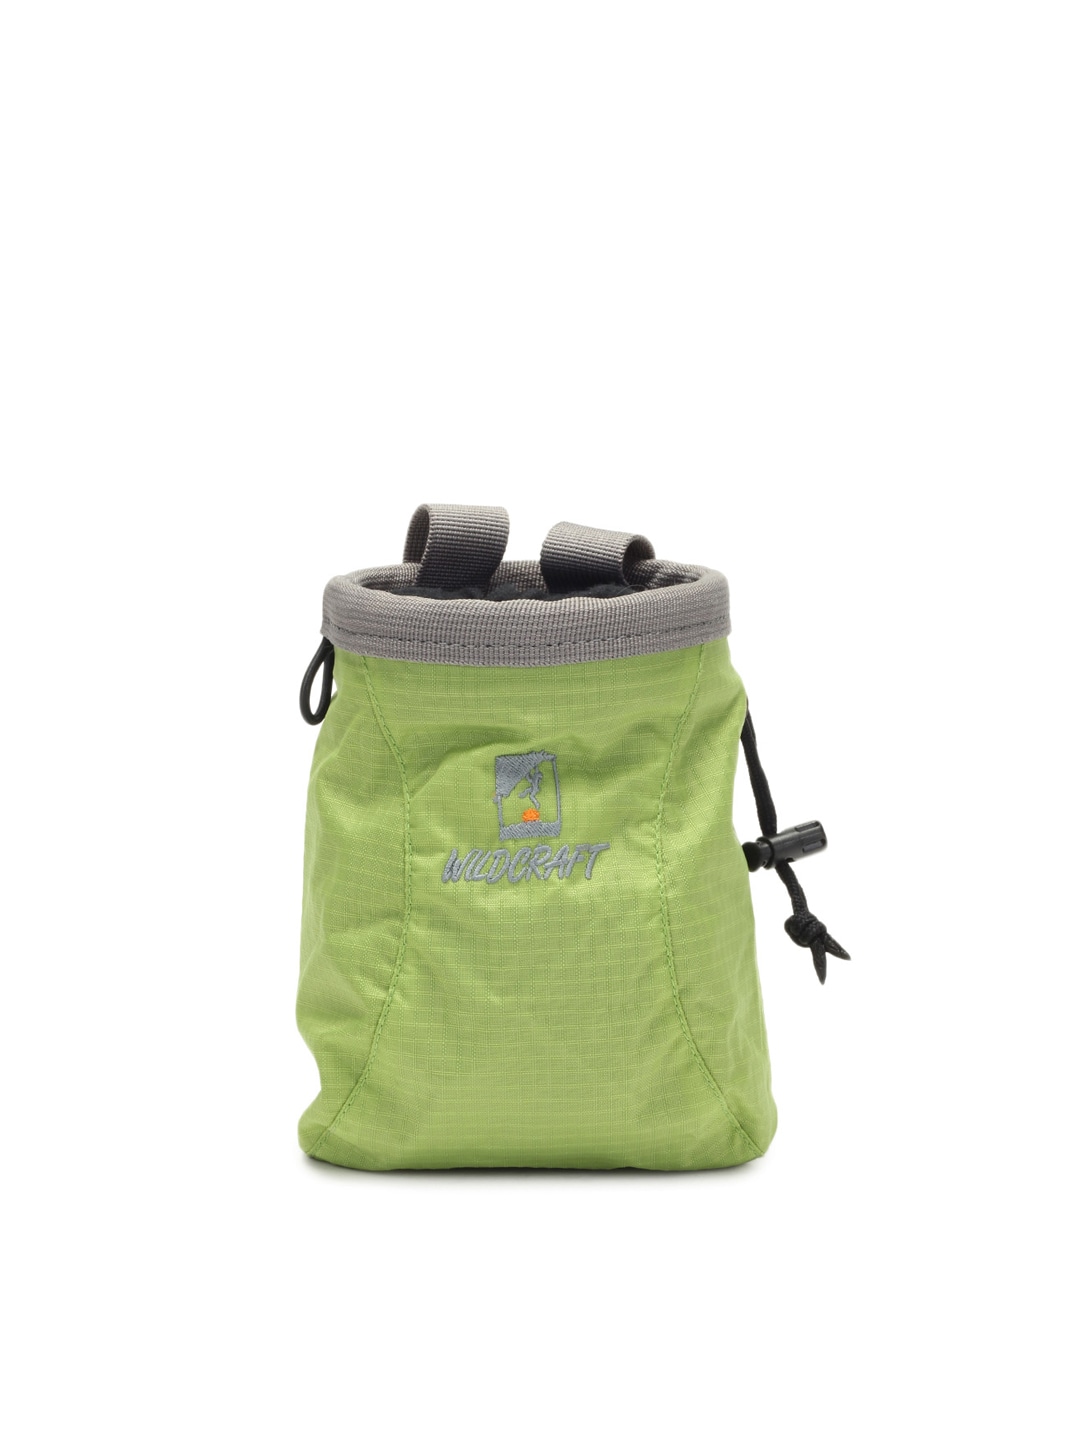 Wildcraft Unisex Green Chalk Bag